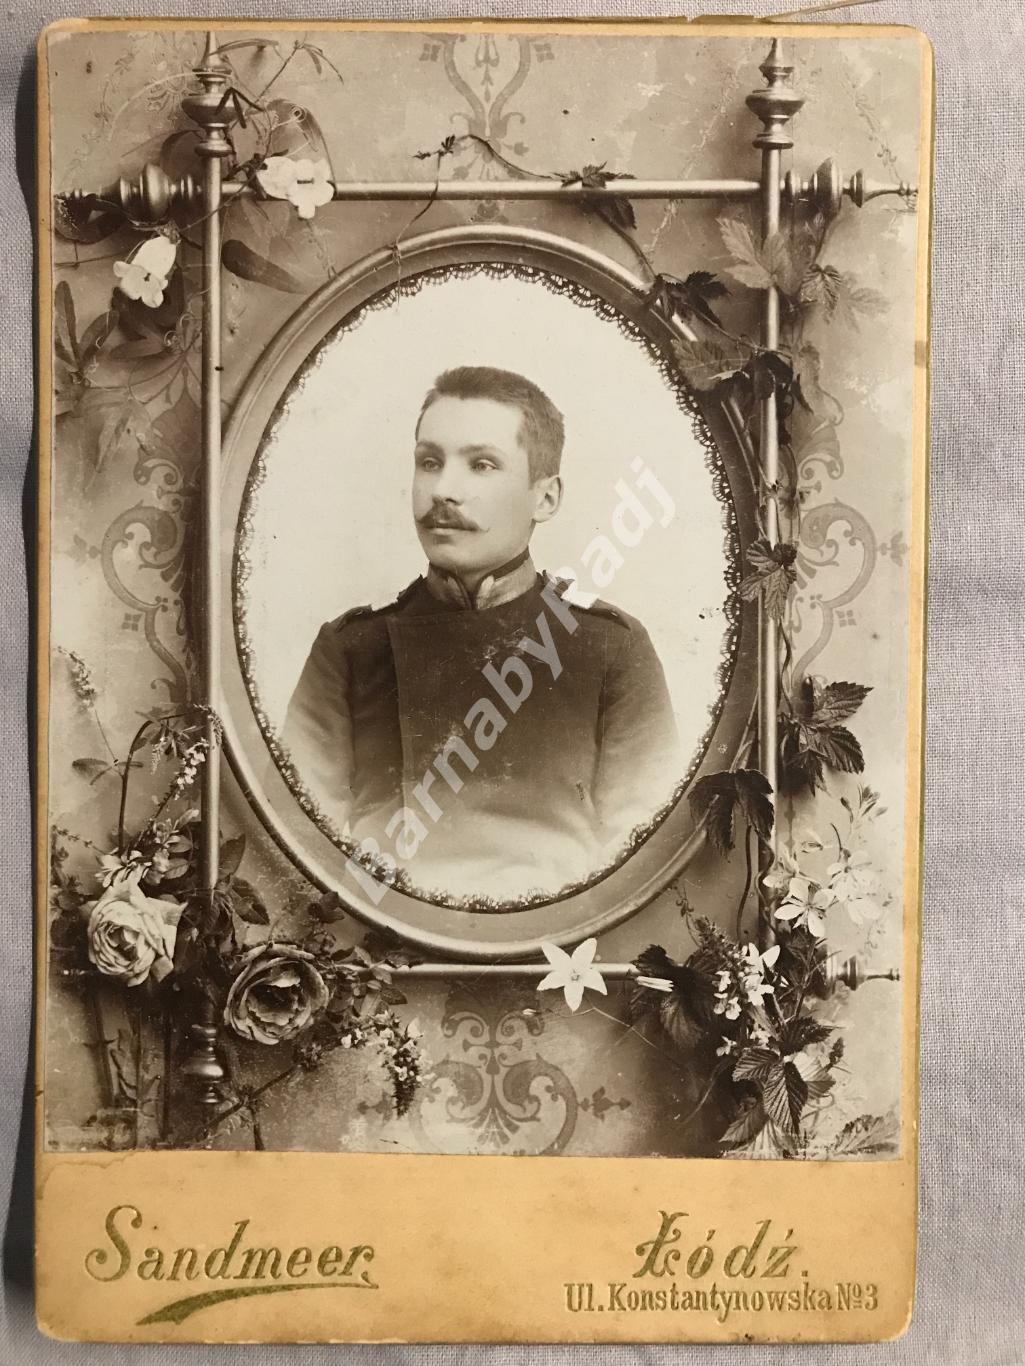 До 1917 г. Унтер-офицер РИА г. Лодзь Lodz фотограф Sandmeer